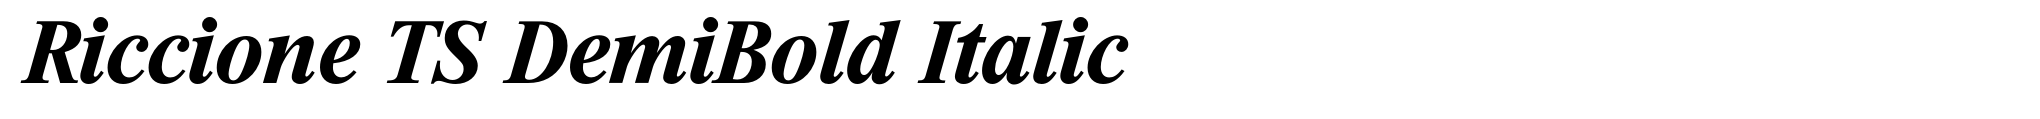 Riccione TS DemiBold Italic image